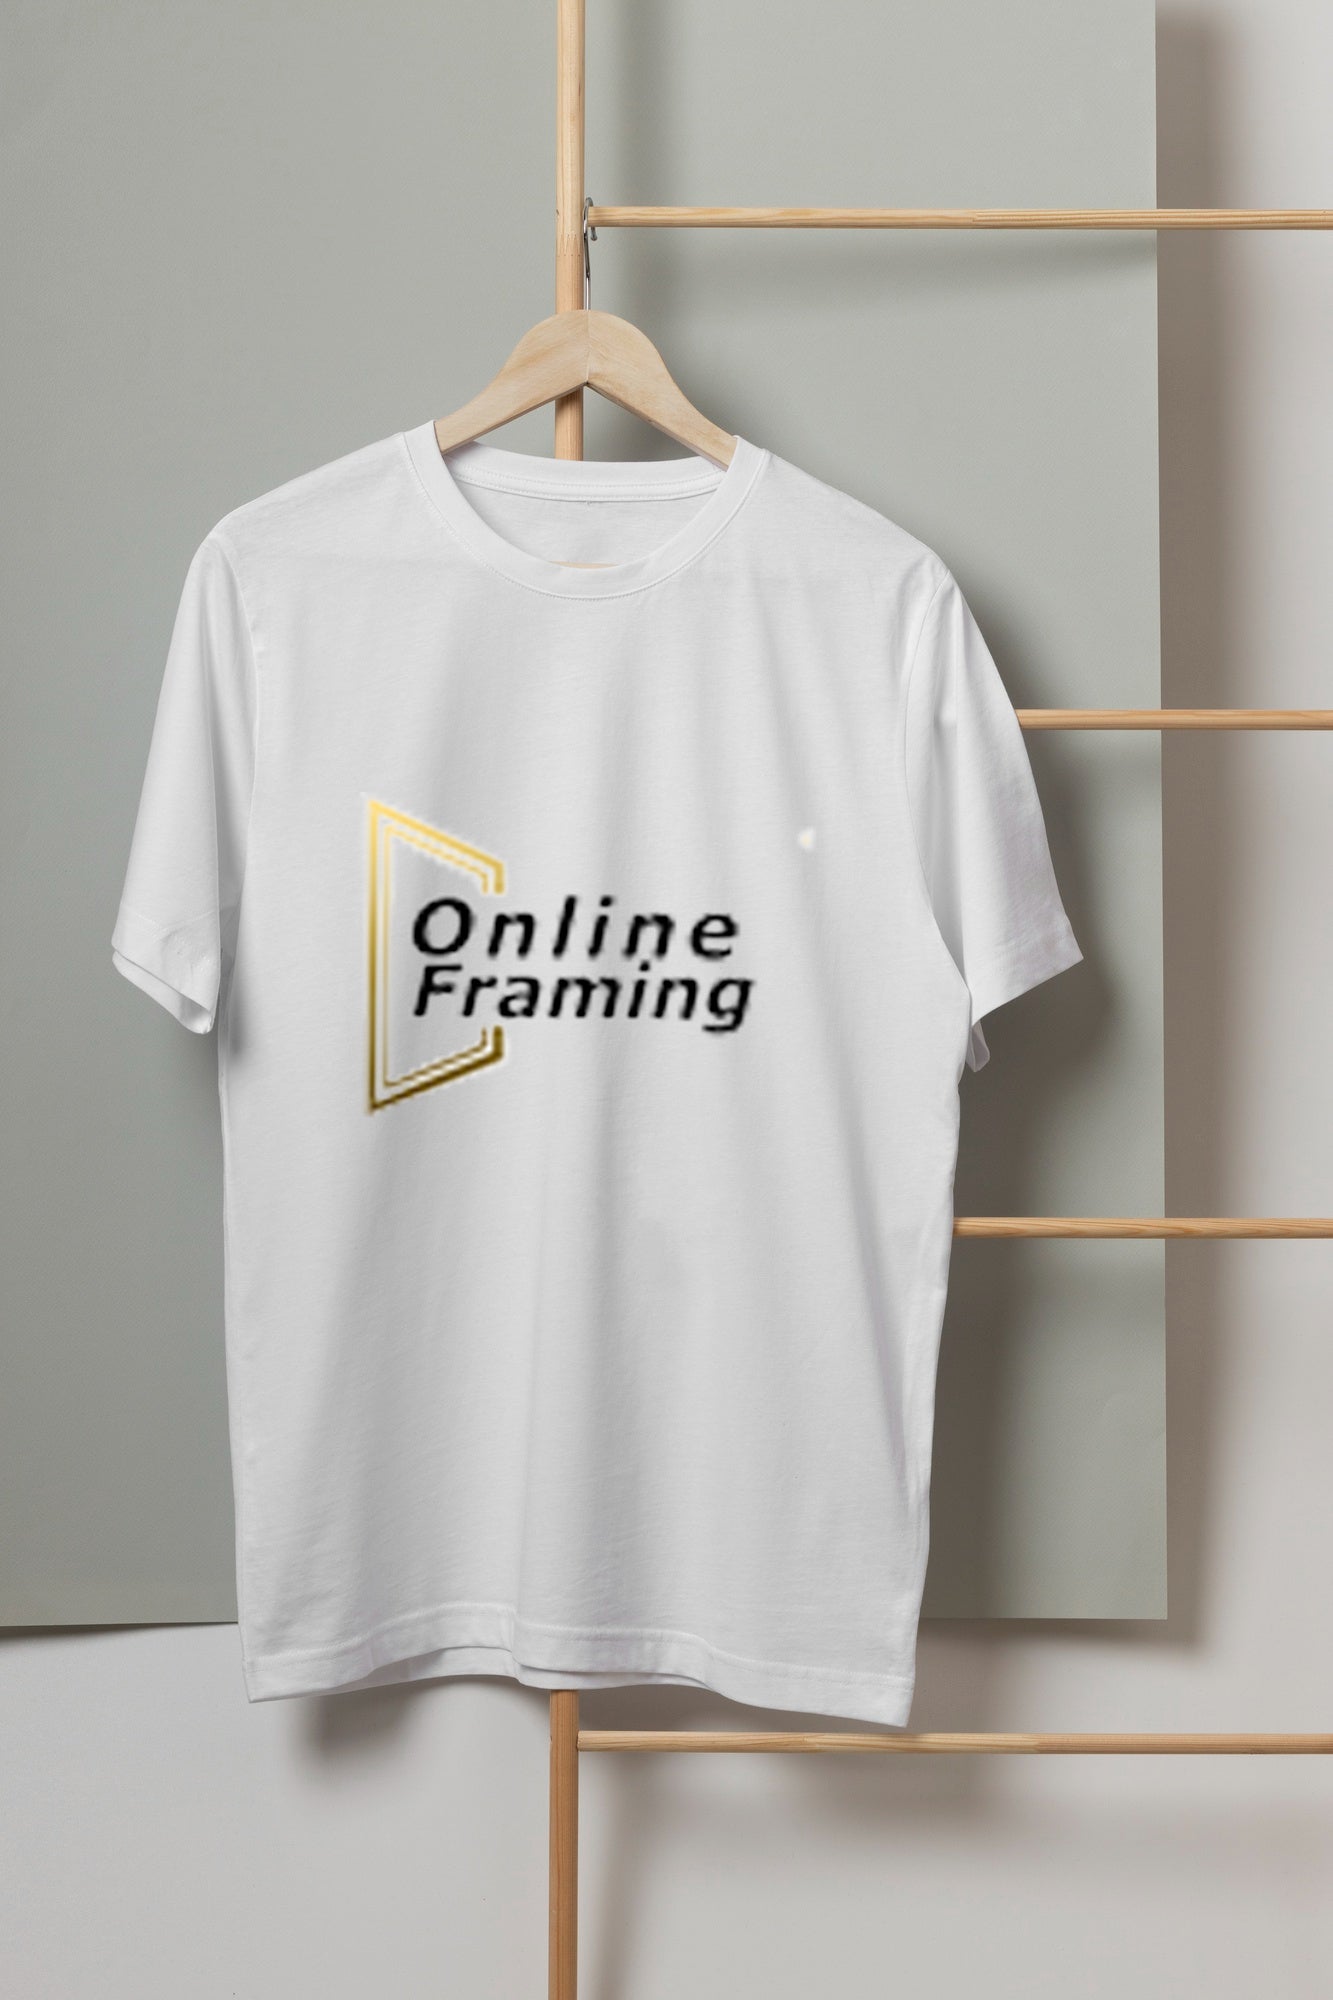 T-shirt printing